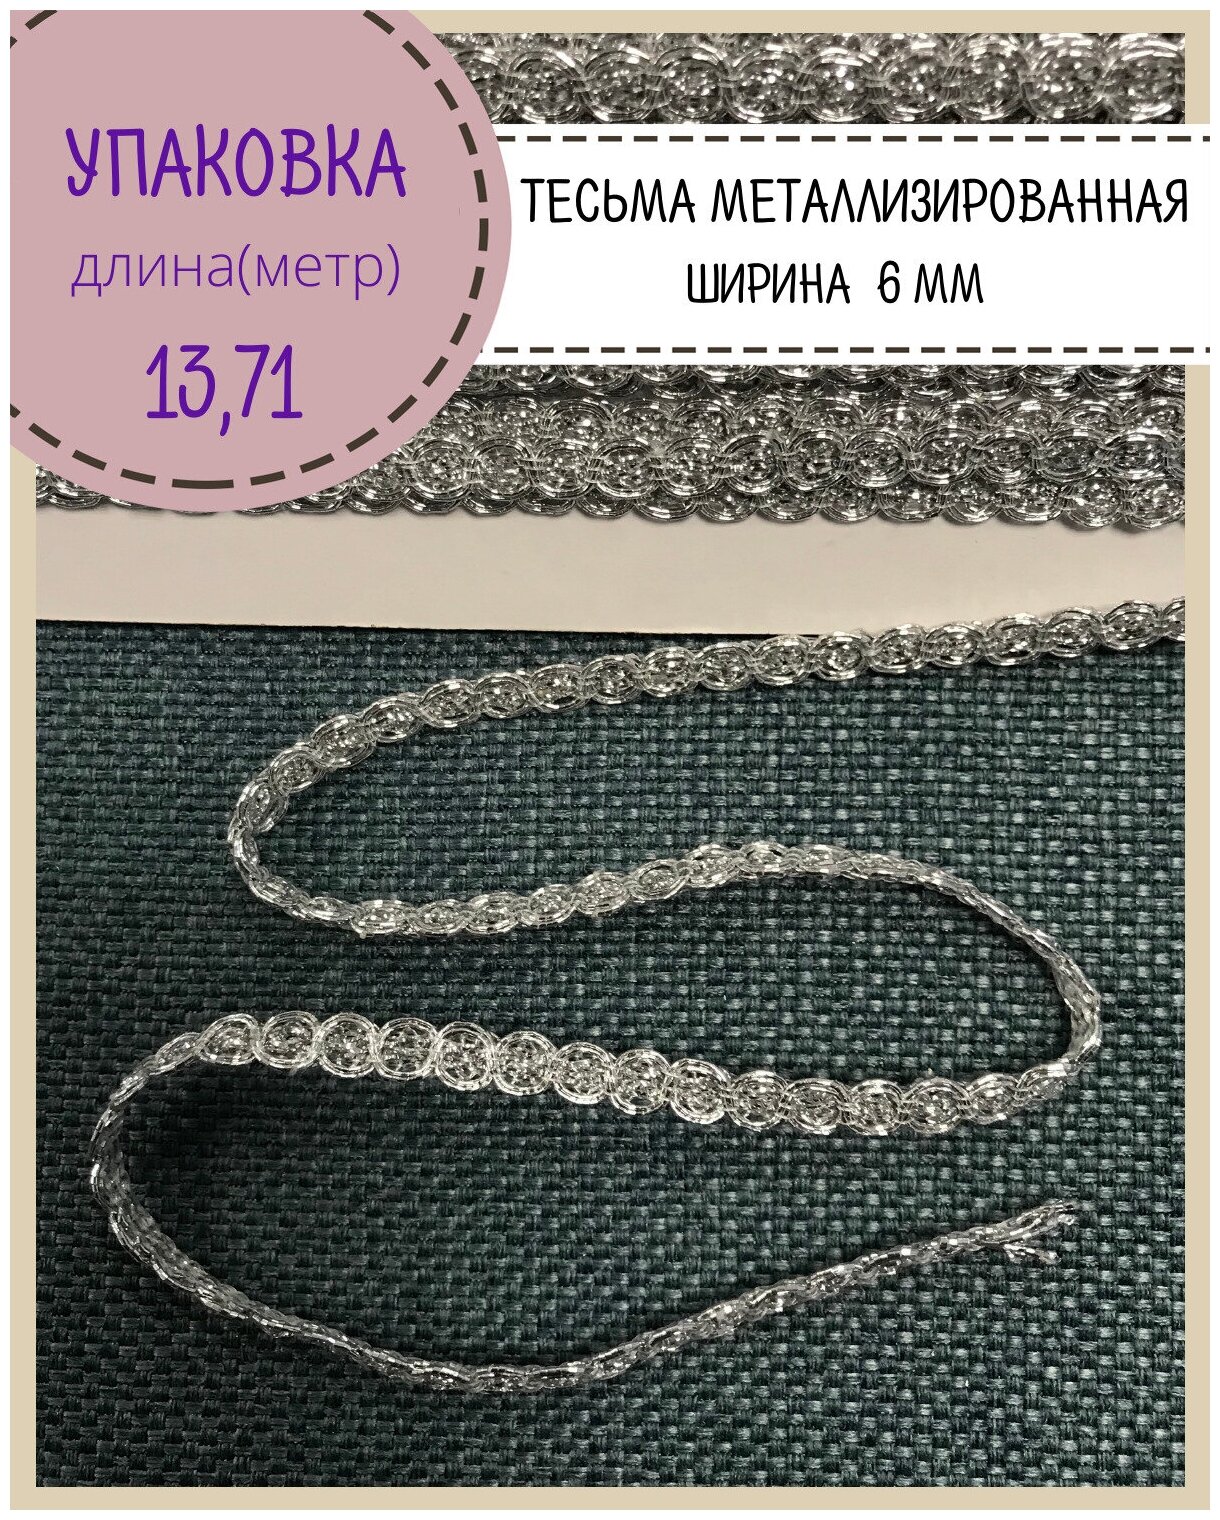 Тесьма отделочная лента металлизированная серебряная, Ш-6 мм, цв. серебро, длина 13.71 метров